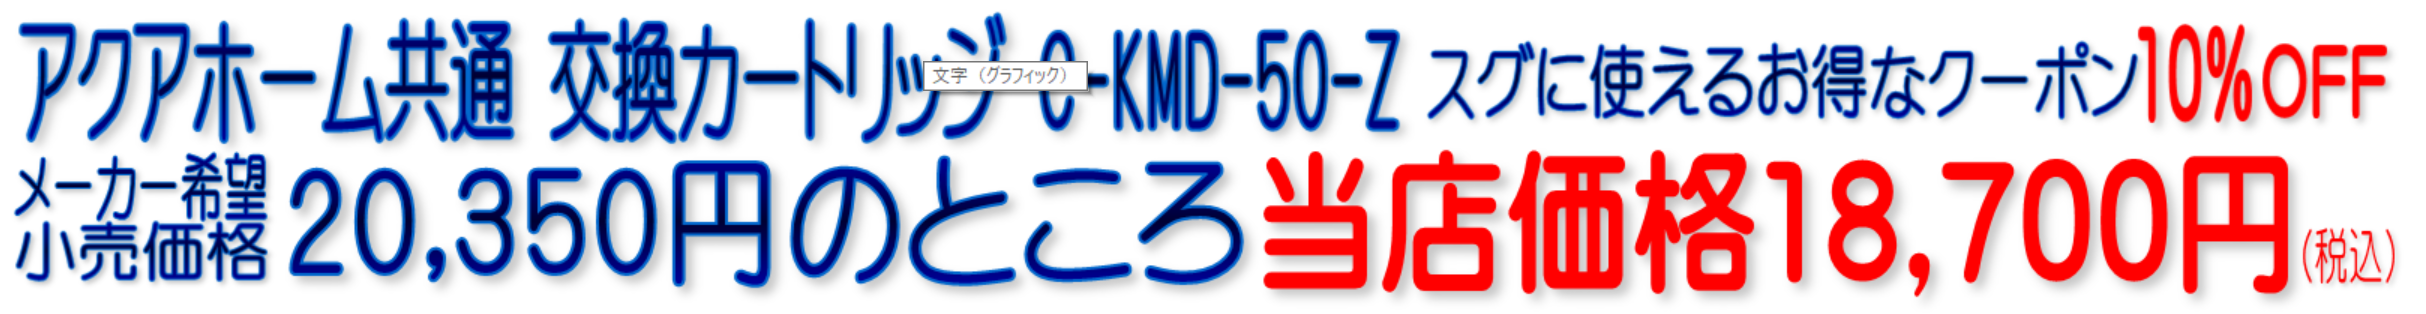 アクアホーム KMD-50ZK